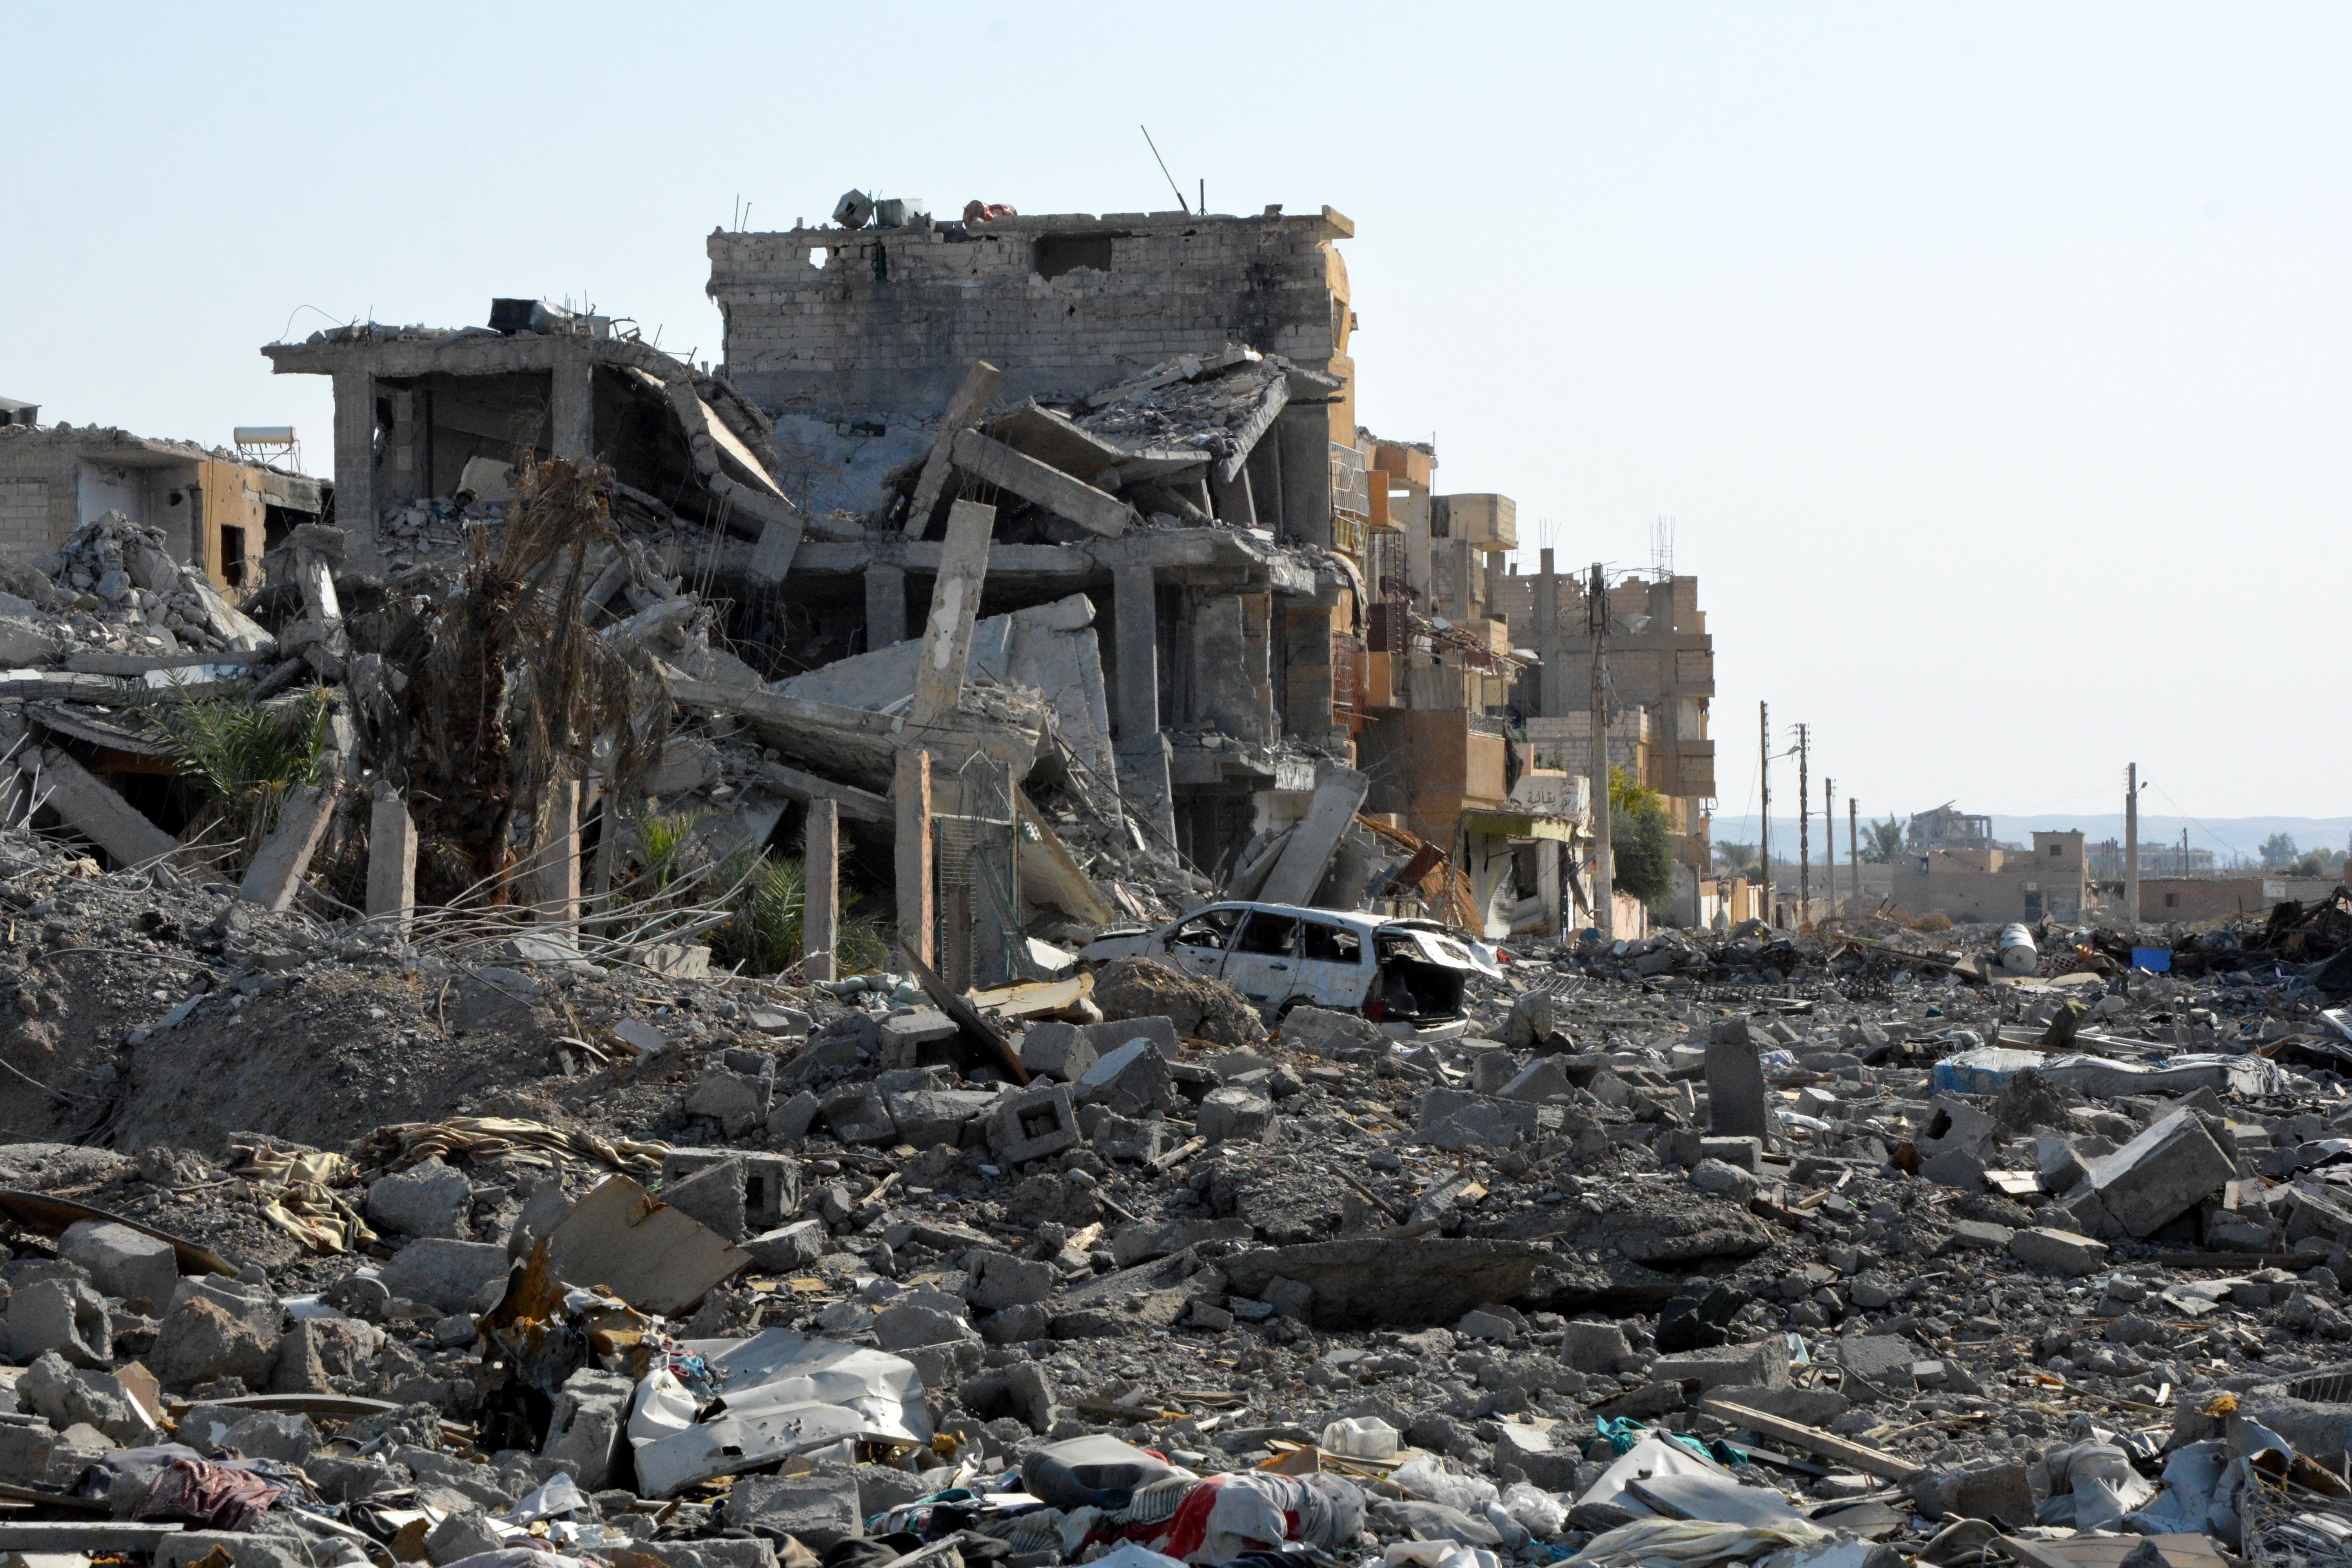 Така изглежда сирийският град Ракка след тригодишната власт на "Ислямска държава" и няколкомесечните американски бомбардировки